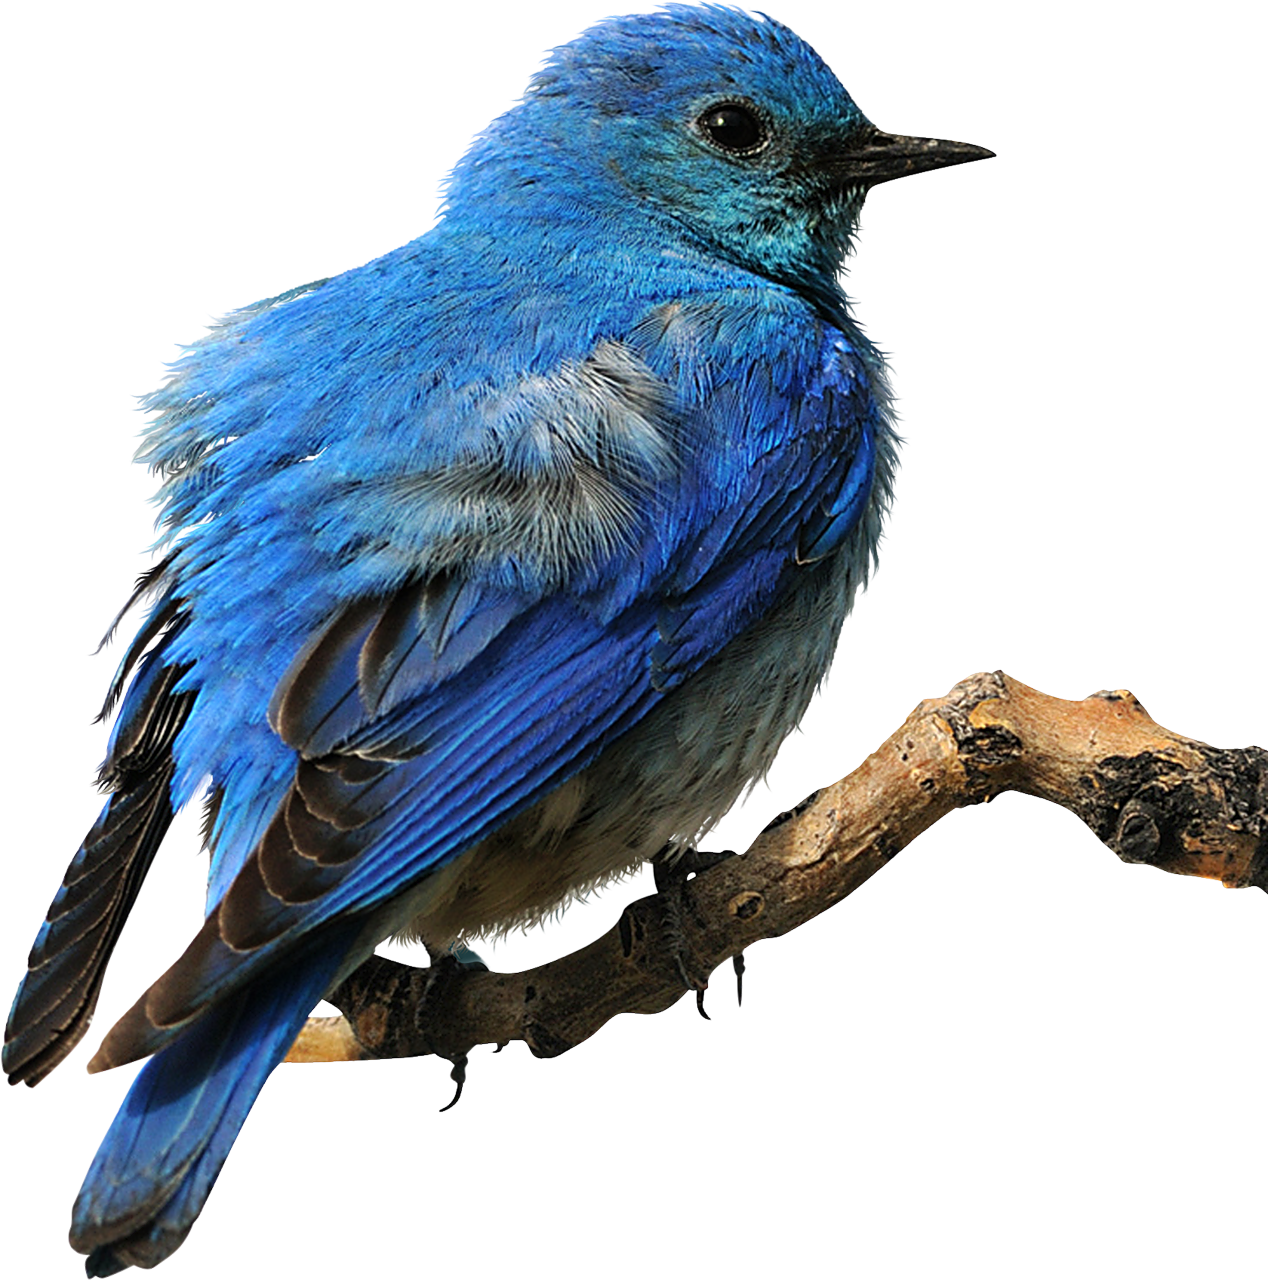 Blue Bird Png Free Logo Image